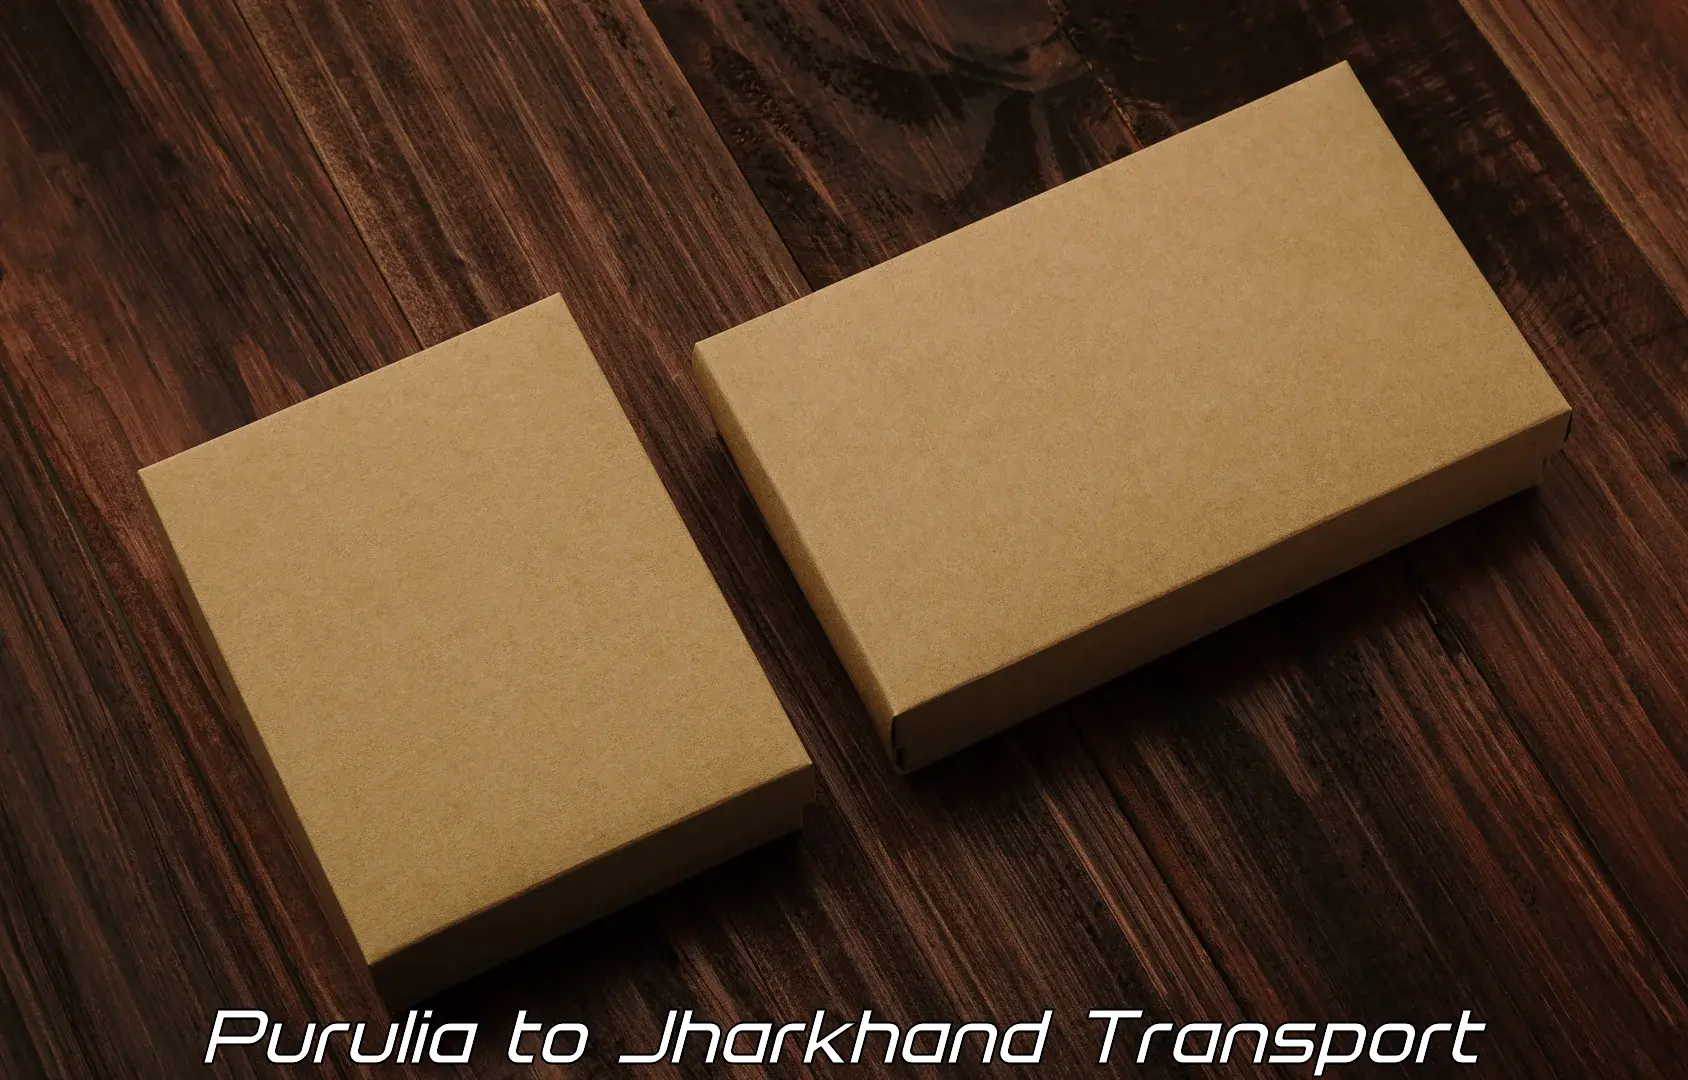 Daily parcel service transport Purulia to Medininagar